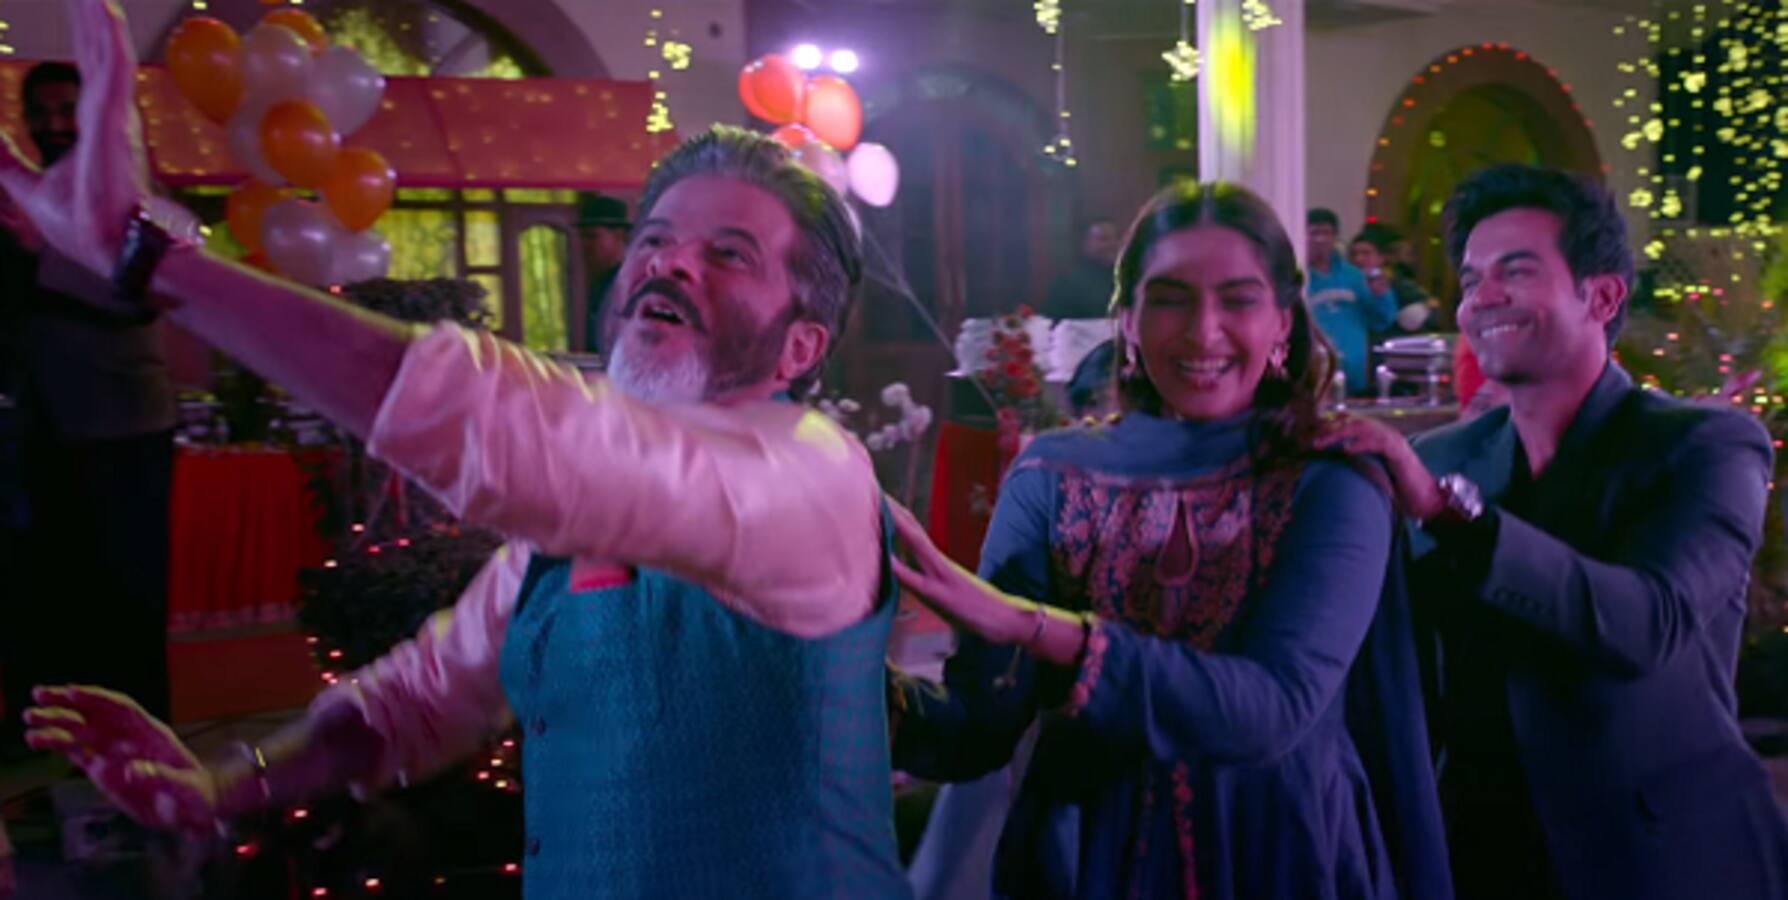 Ek Ladki Ko Dekha Toh Aisa Laga teaser: Sonam Kapoor, Anil Kapoor's film looks simple and breezy unlike the tagline - watch video